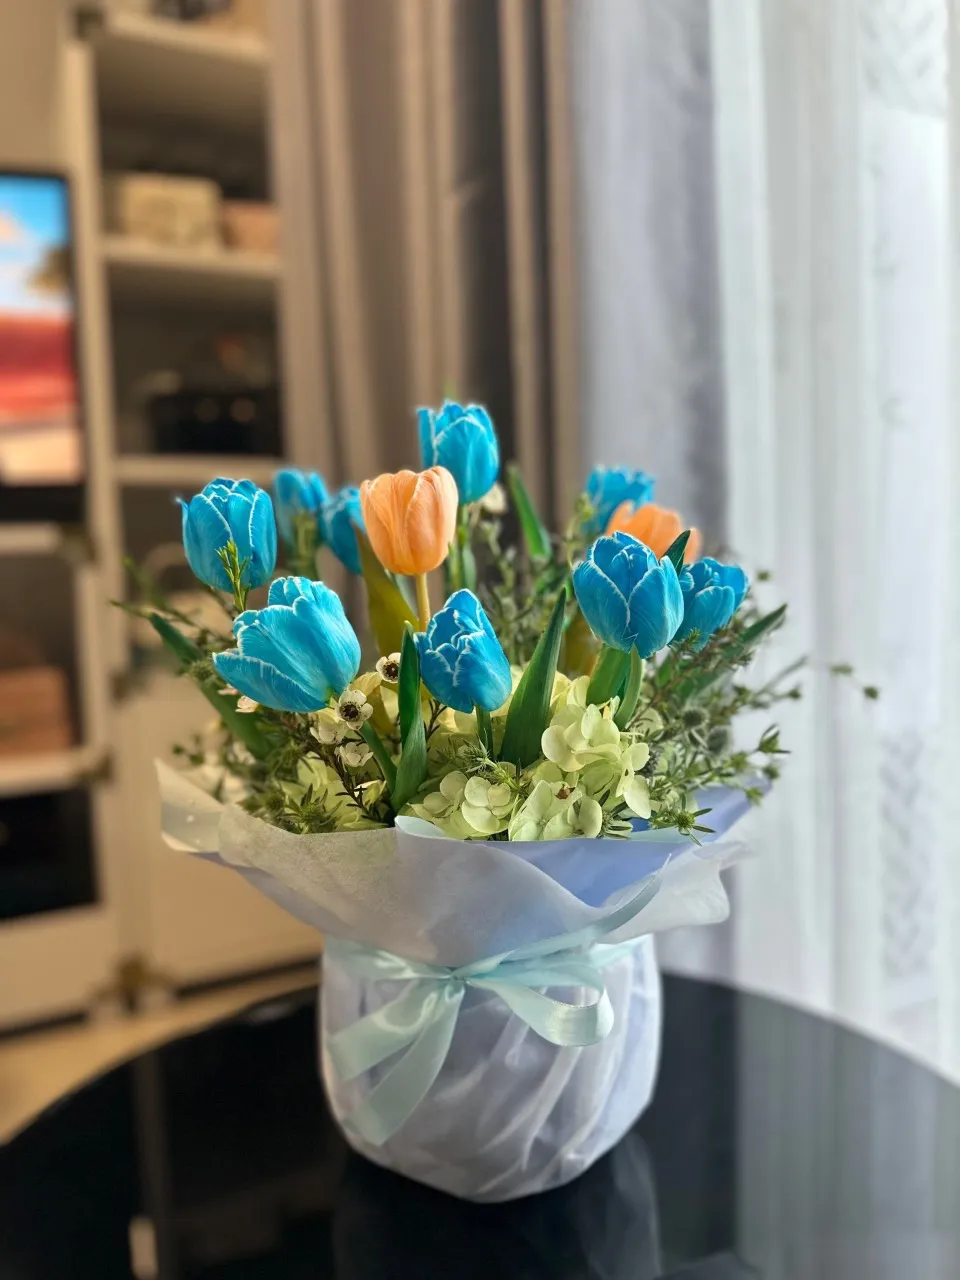 Hoa tulip cam - xanh kết hợp với một số hoa khác tạo nên một bình hoa đẹp và bắt mắt